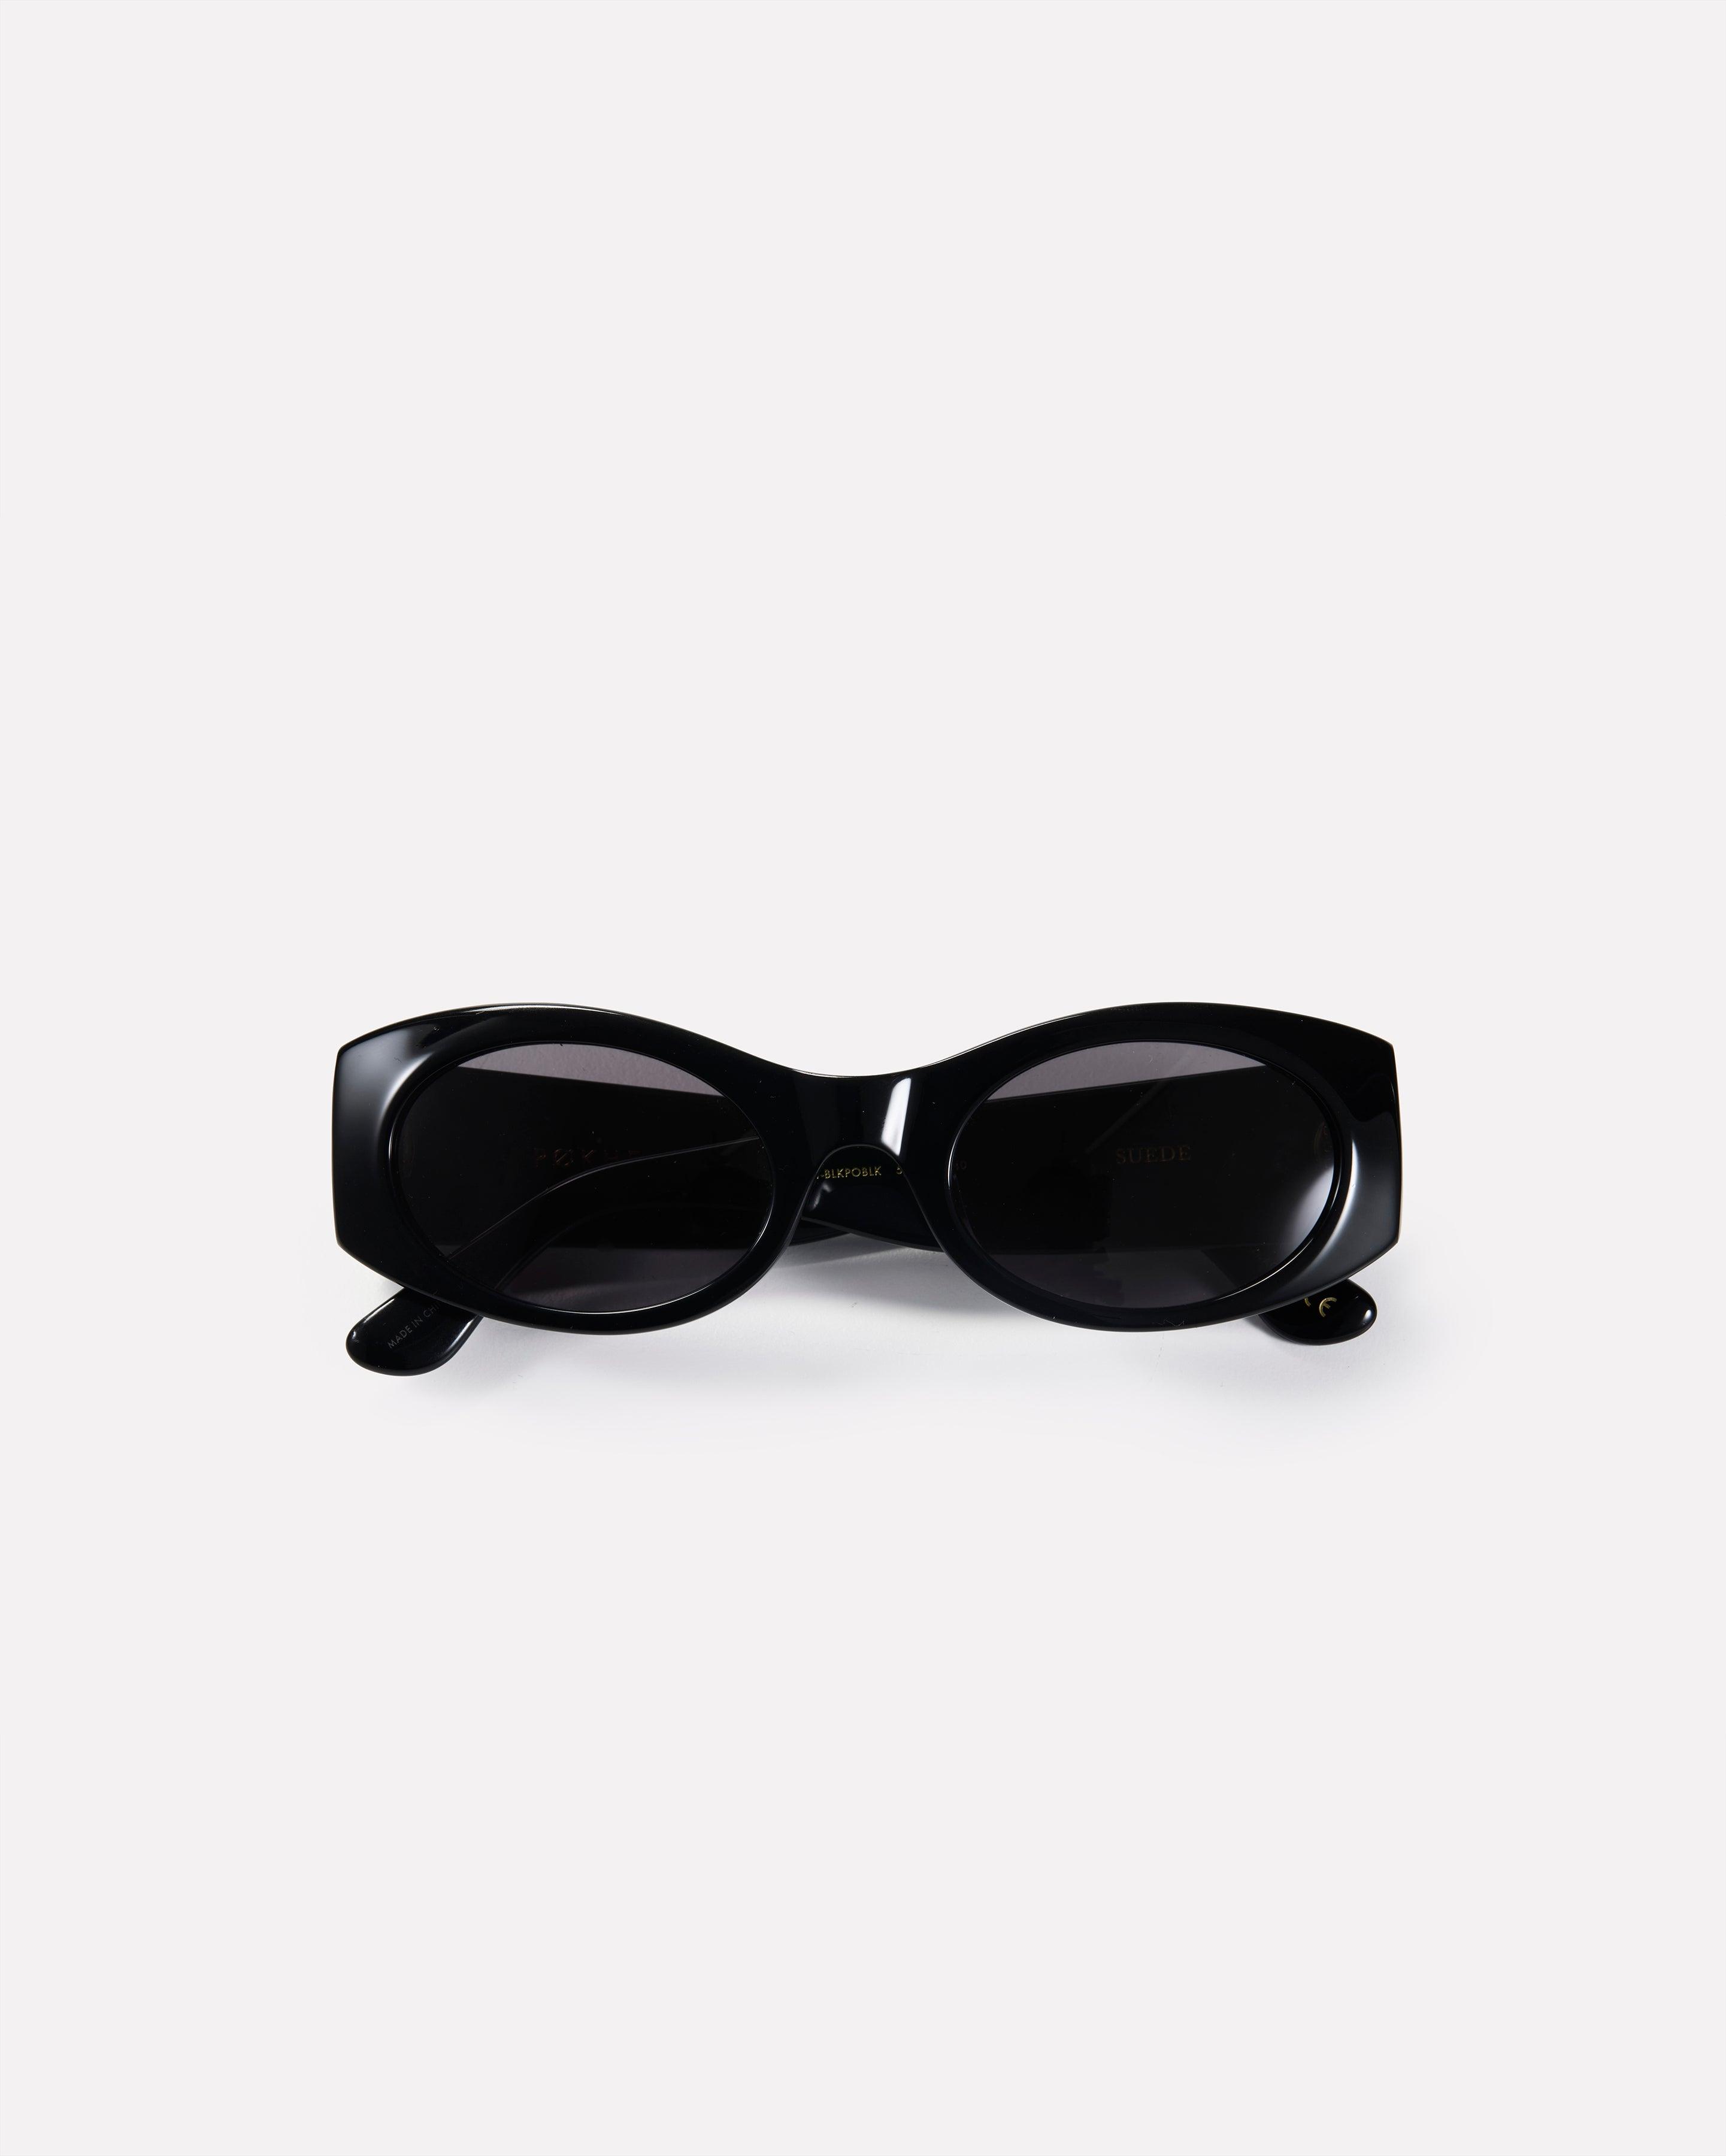 Suede - Black Polished / Black - Sunglasses - EPOKHE EYEWEAR